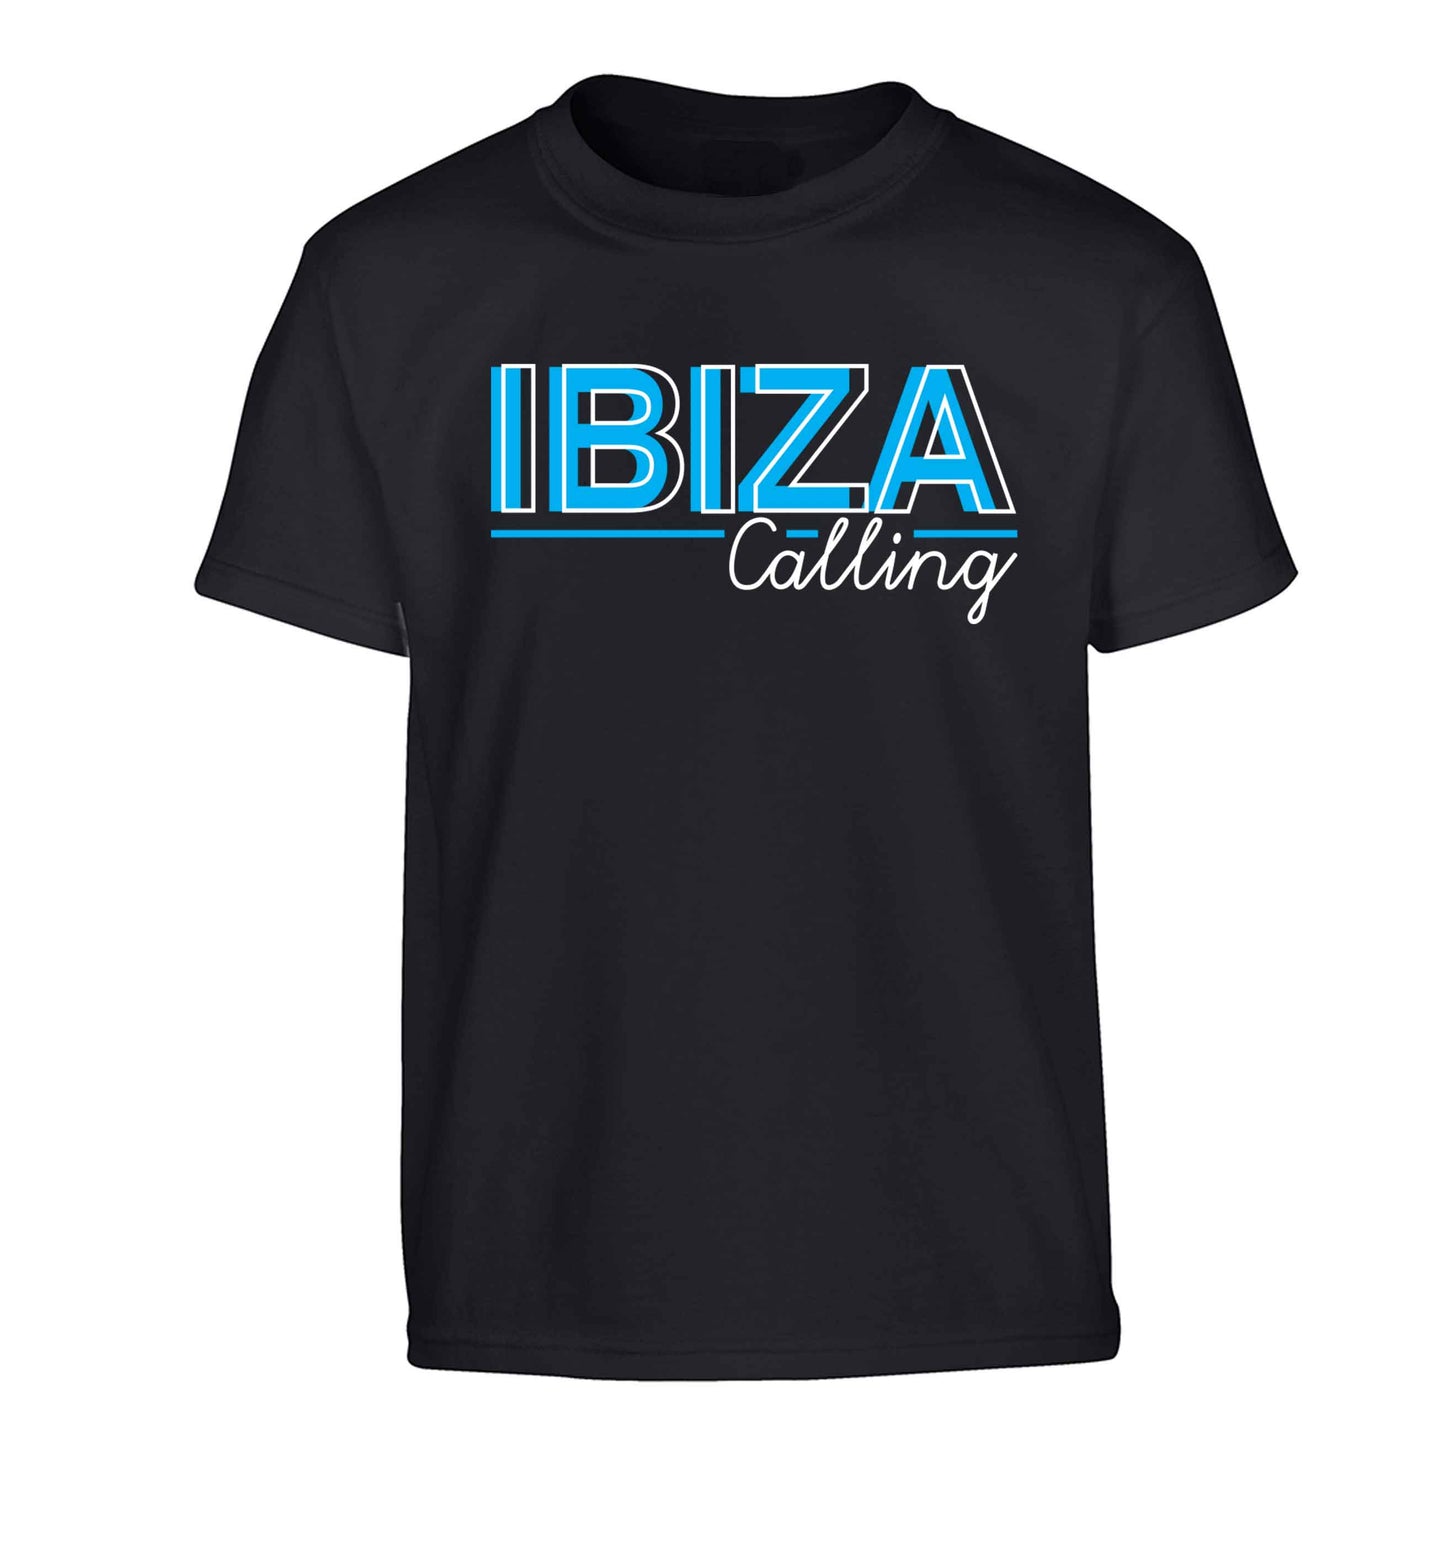 Ibiza calling Children's black Tshirt 12-13 Years